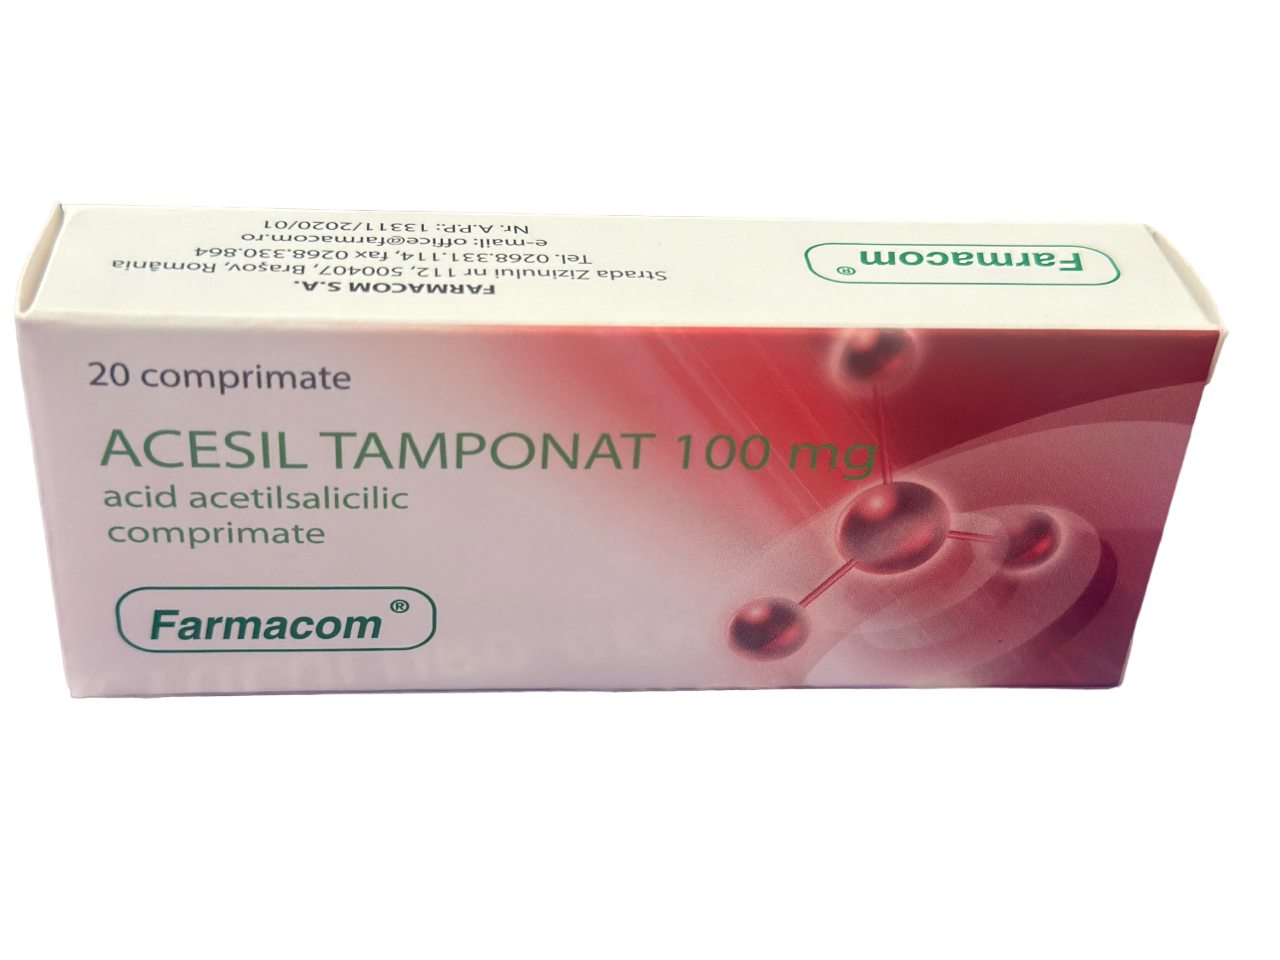 Medicamente fara reteta (OTC) - ACESIL TAMPONAT 100 MG * 20 CPR FARMACOM, farmacom.ro